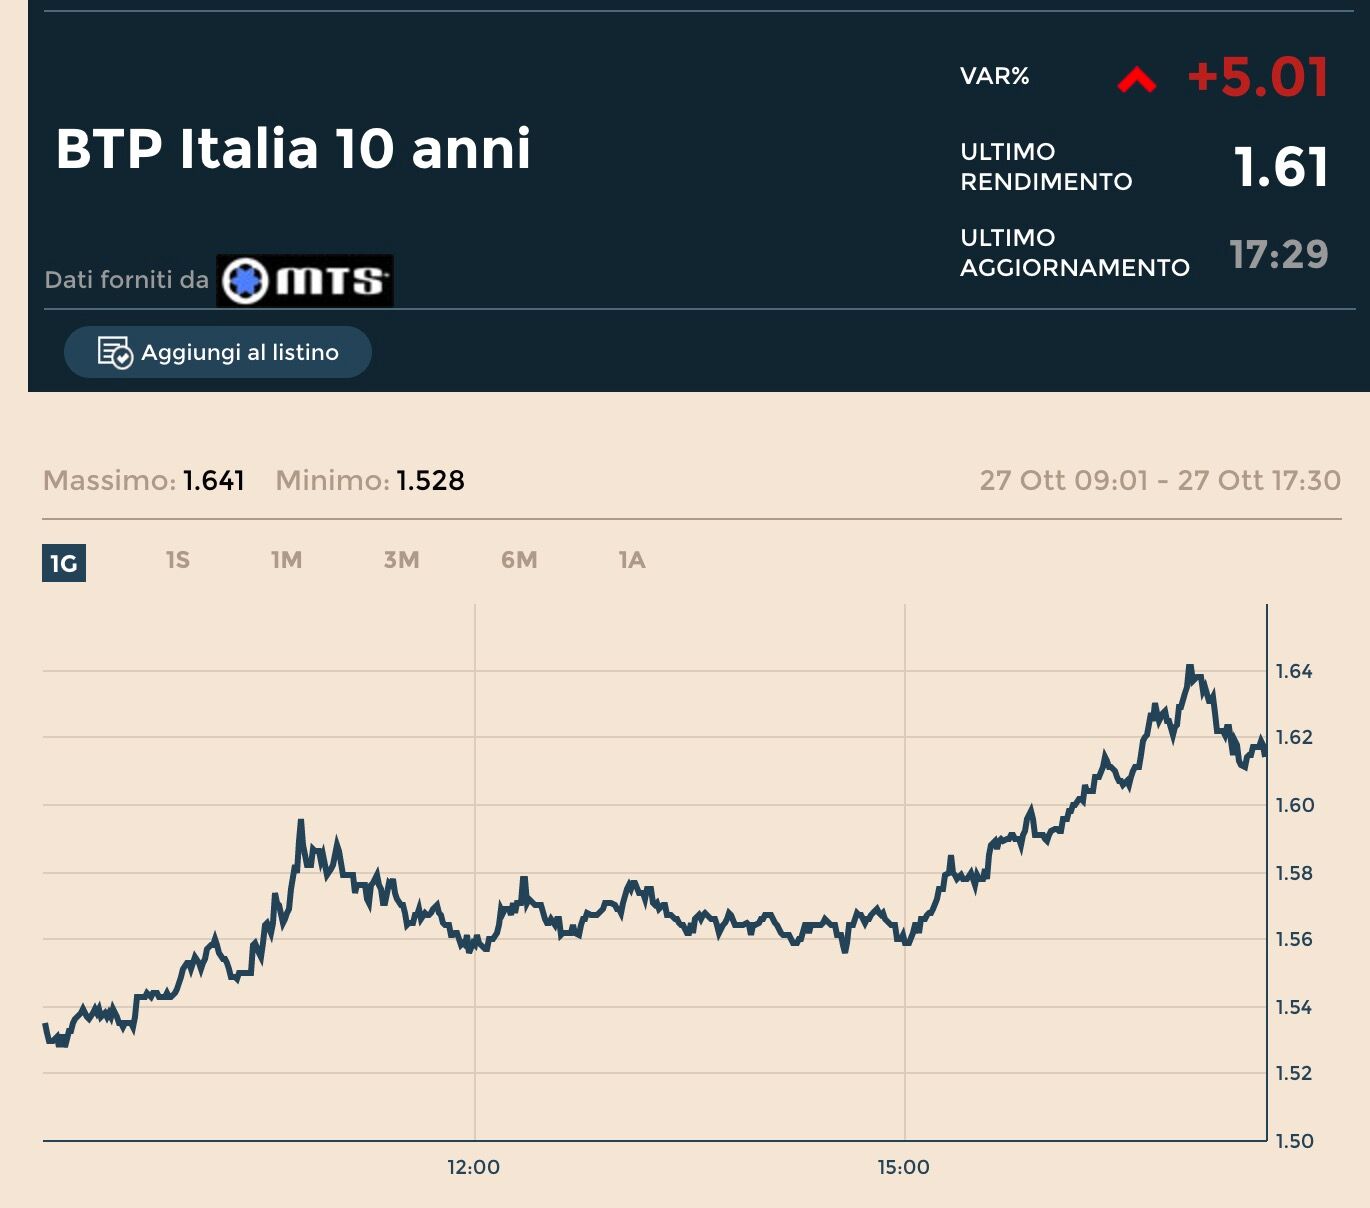 BTP Italia: il miglior investimento sicuro?